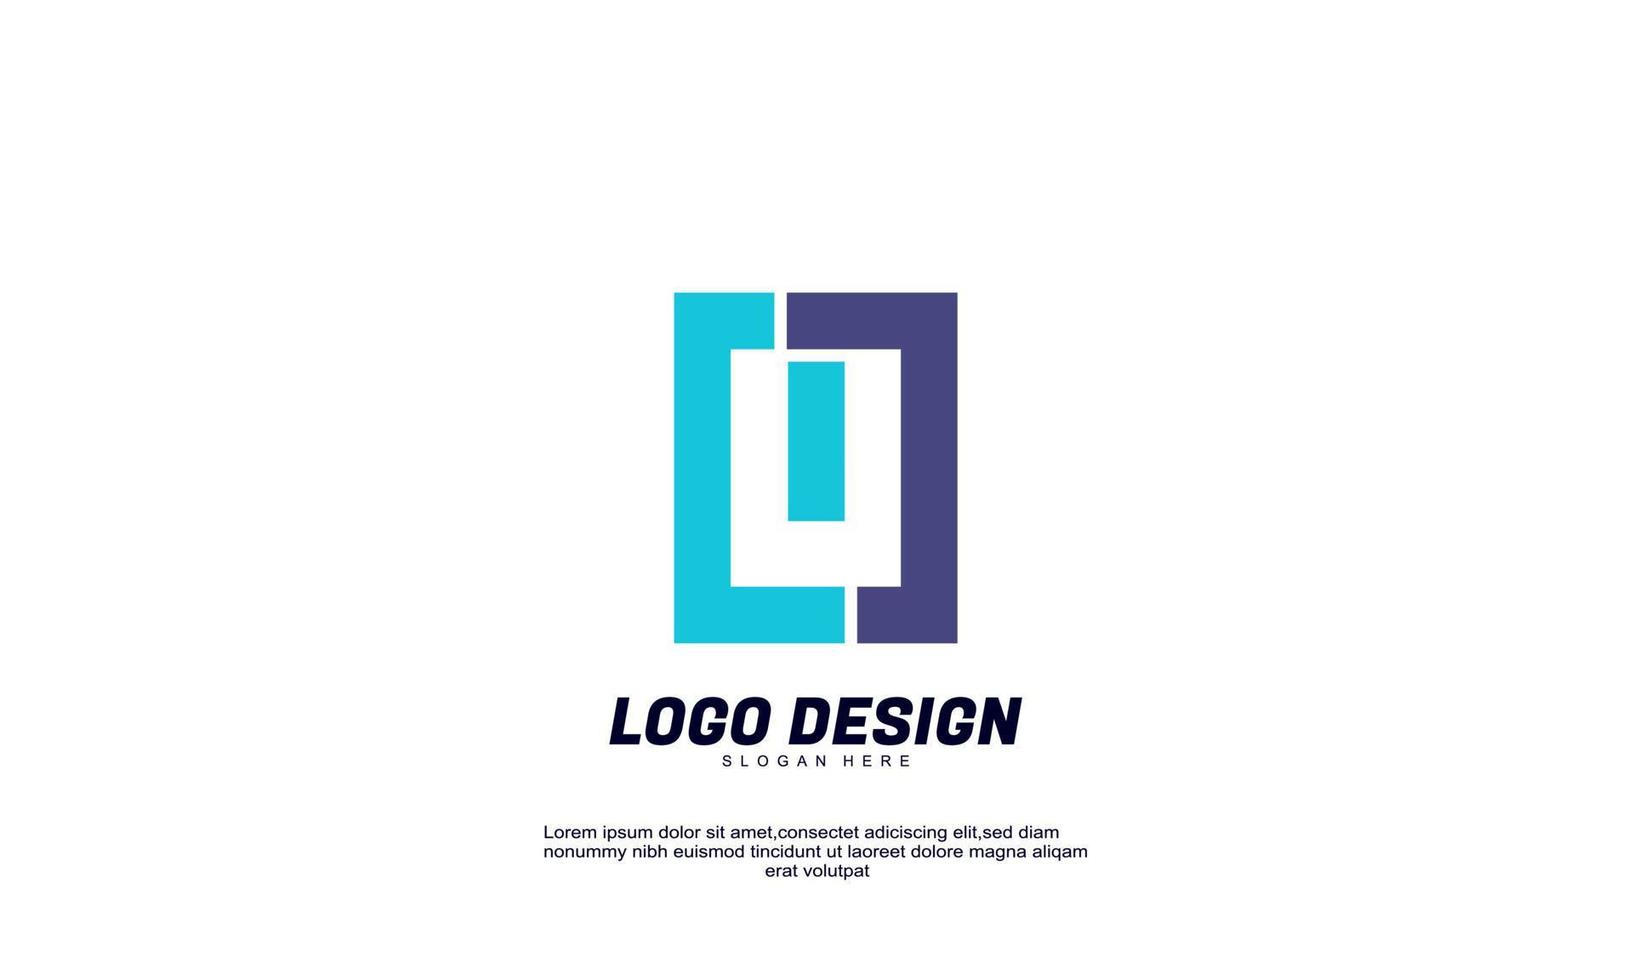 lager kreative idee für modernes logo firmengebäude und geschäft bunter flacher designvektor vektor